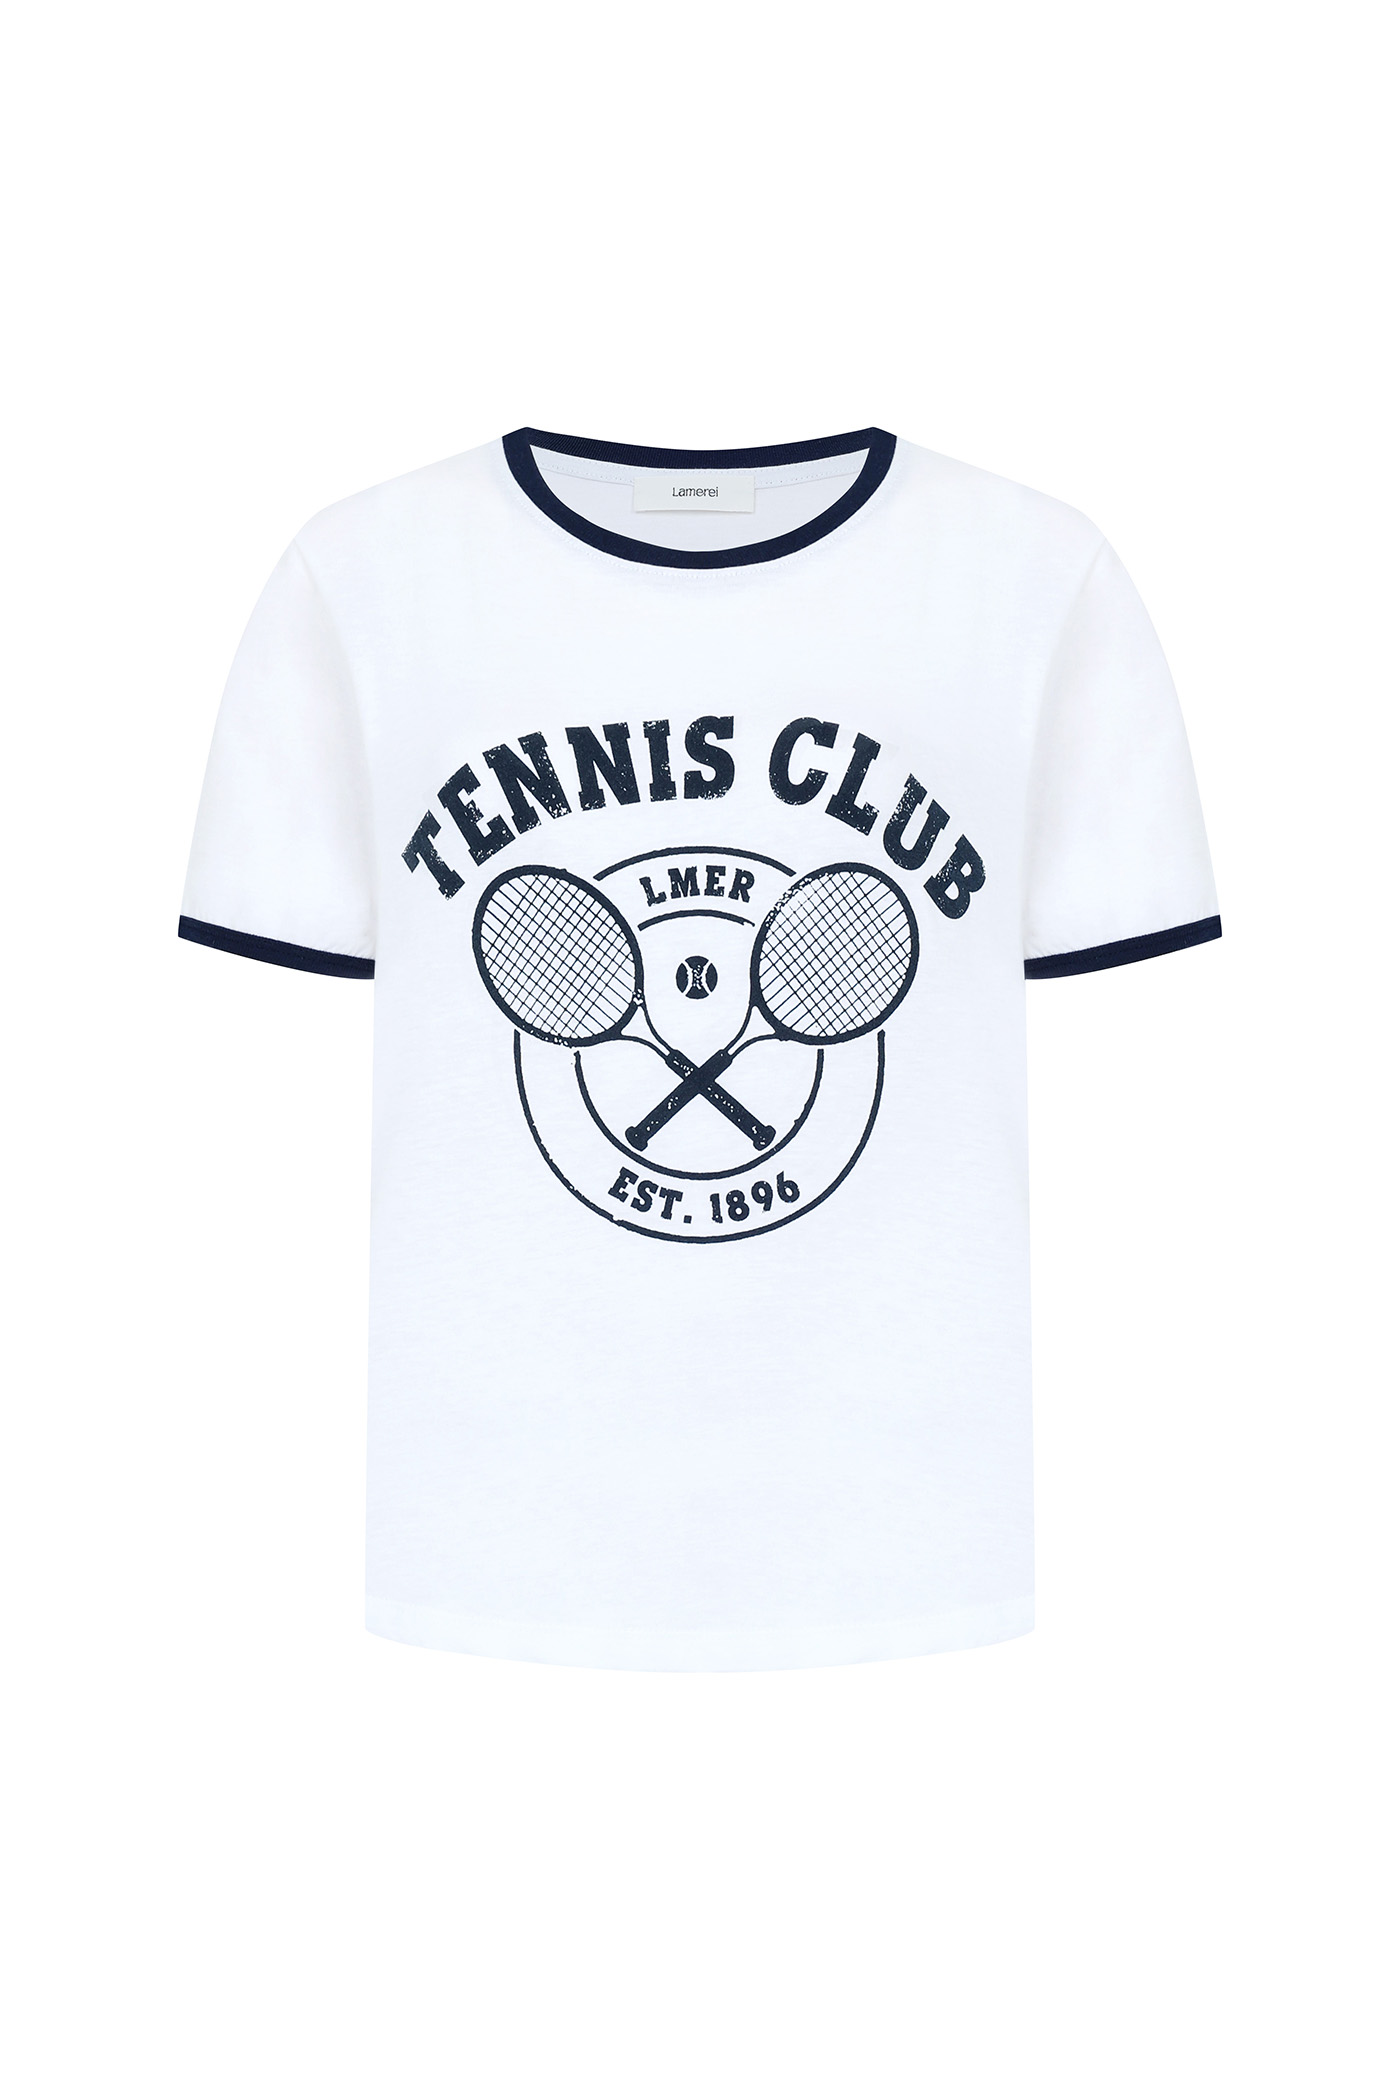 Lamerei Tennis Short Sleeve T-shirt[LMBCSUTT605]-2color